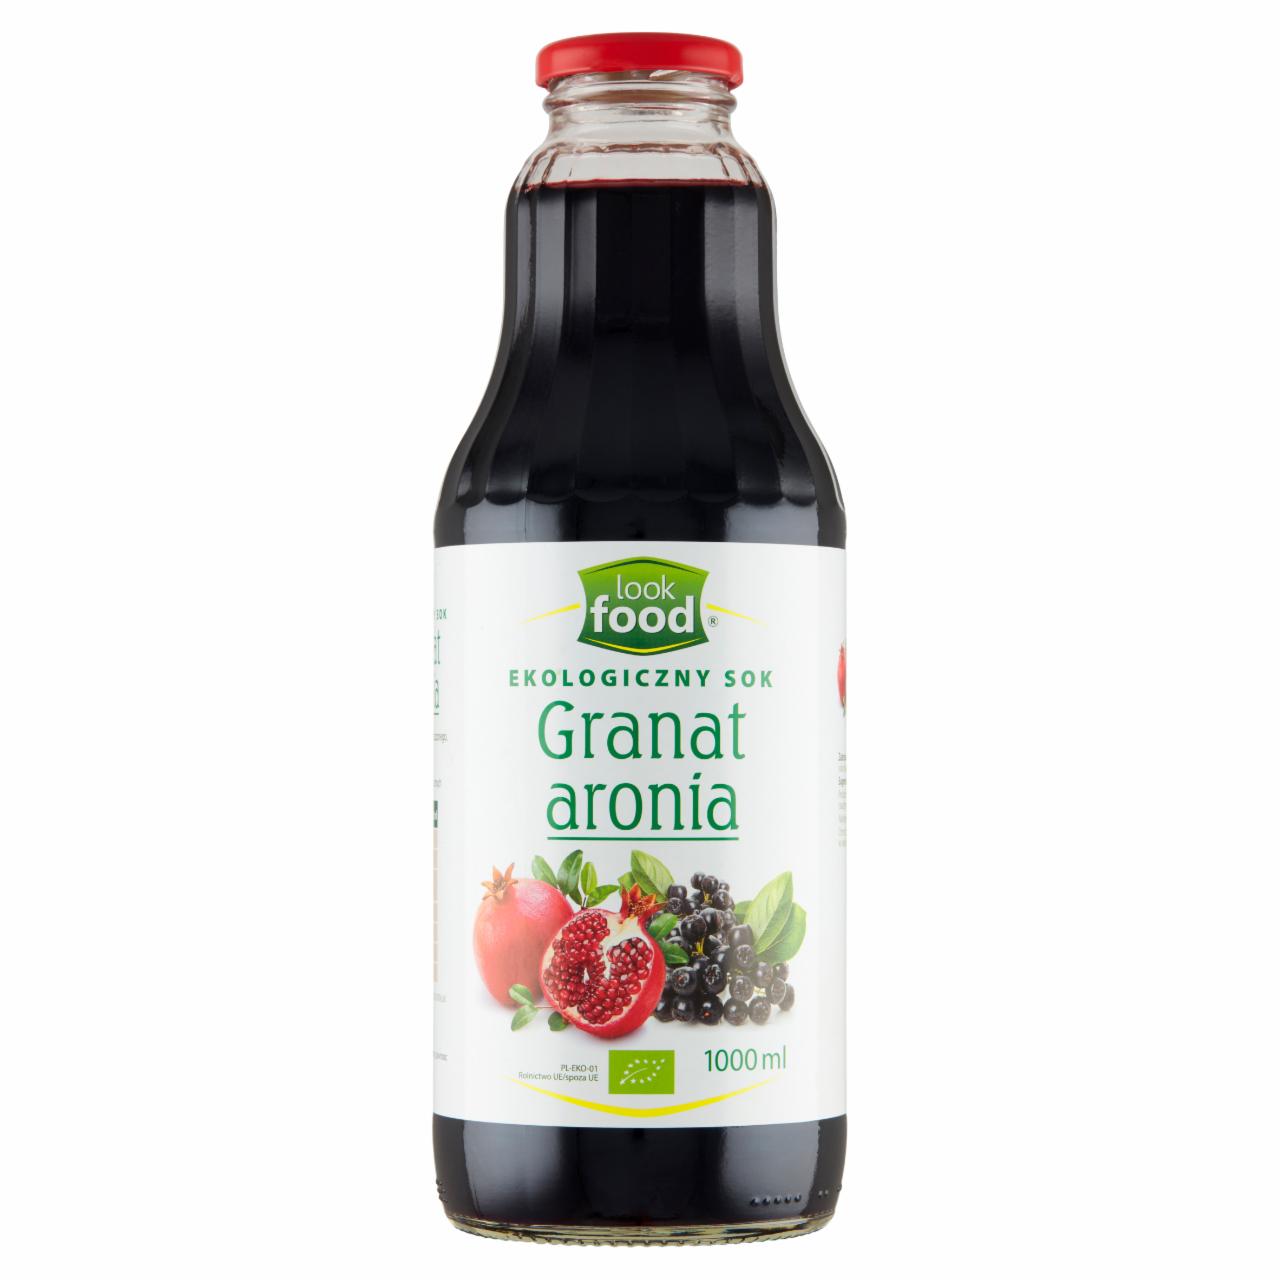 Zdjęcia - Look Food Ekologiczny sok granat aronia 1000 ml